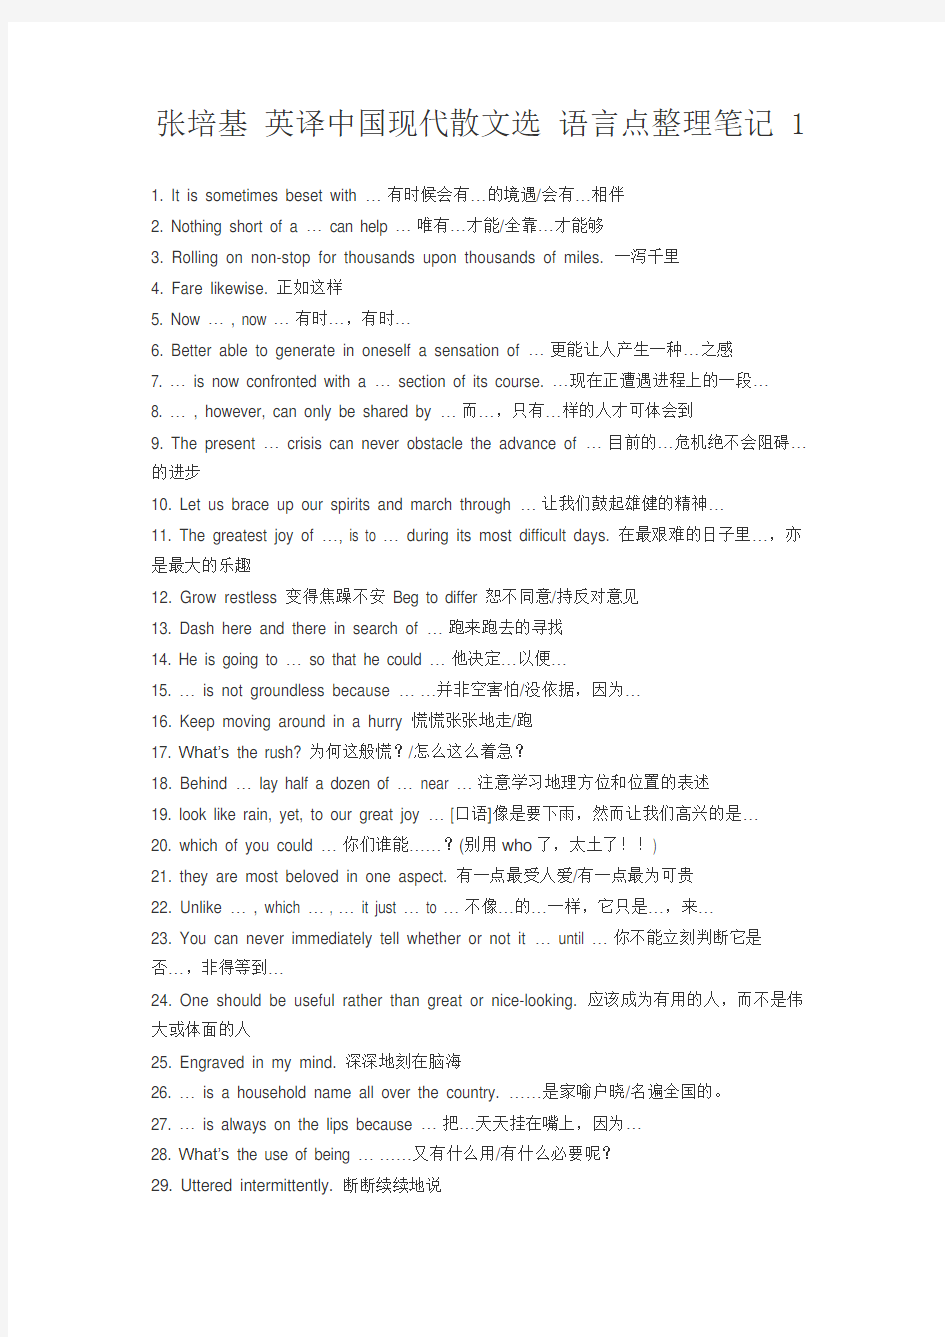 张培基 英译中国现代散文选 语言点整理笔记 1培训讲学